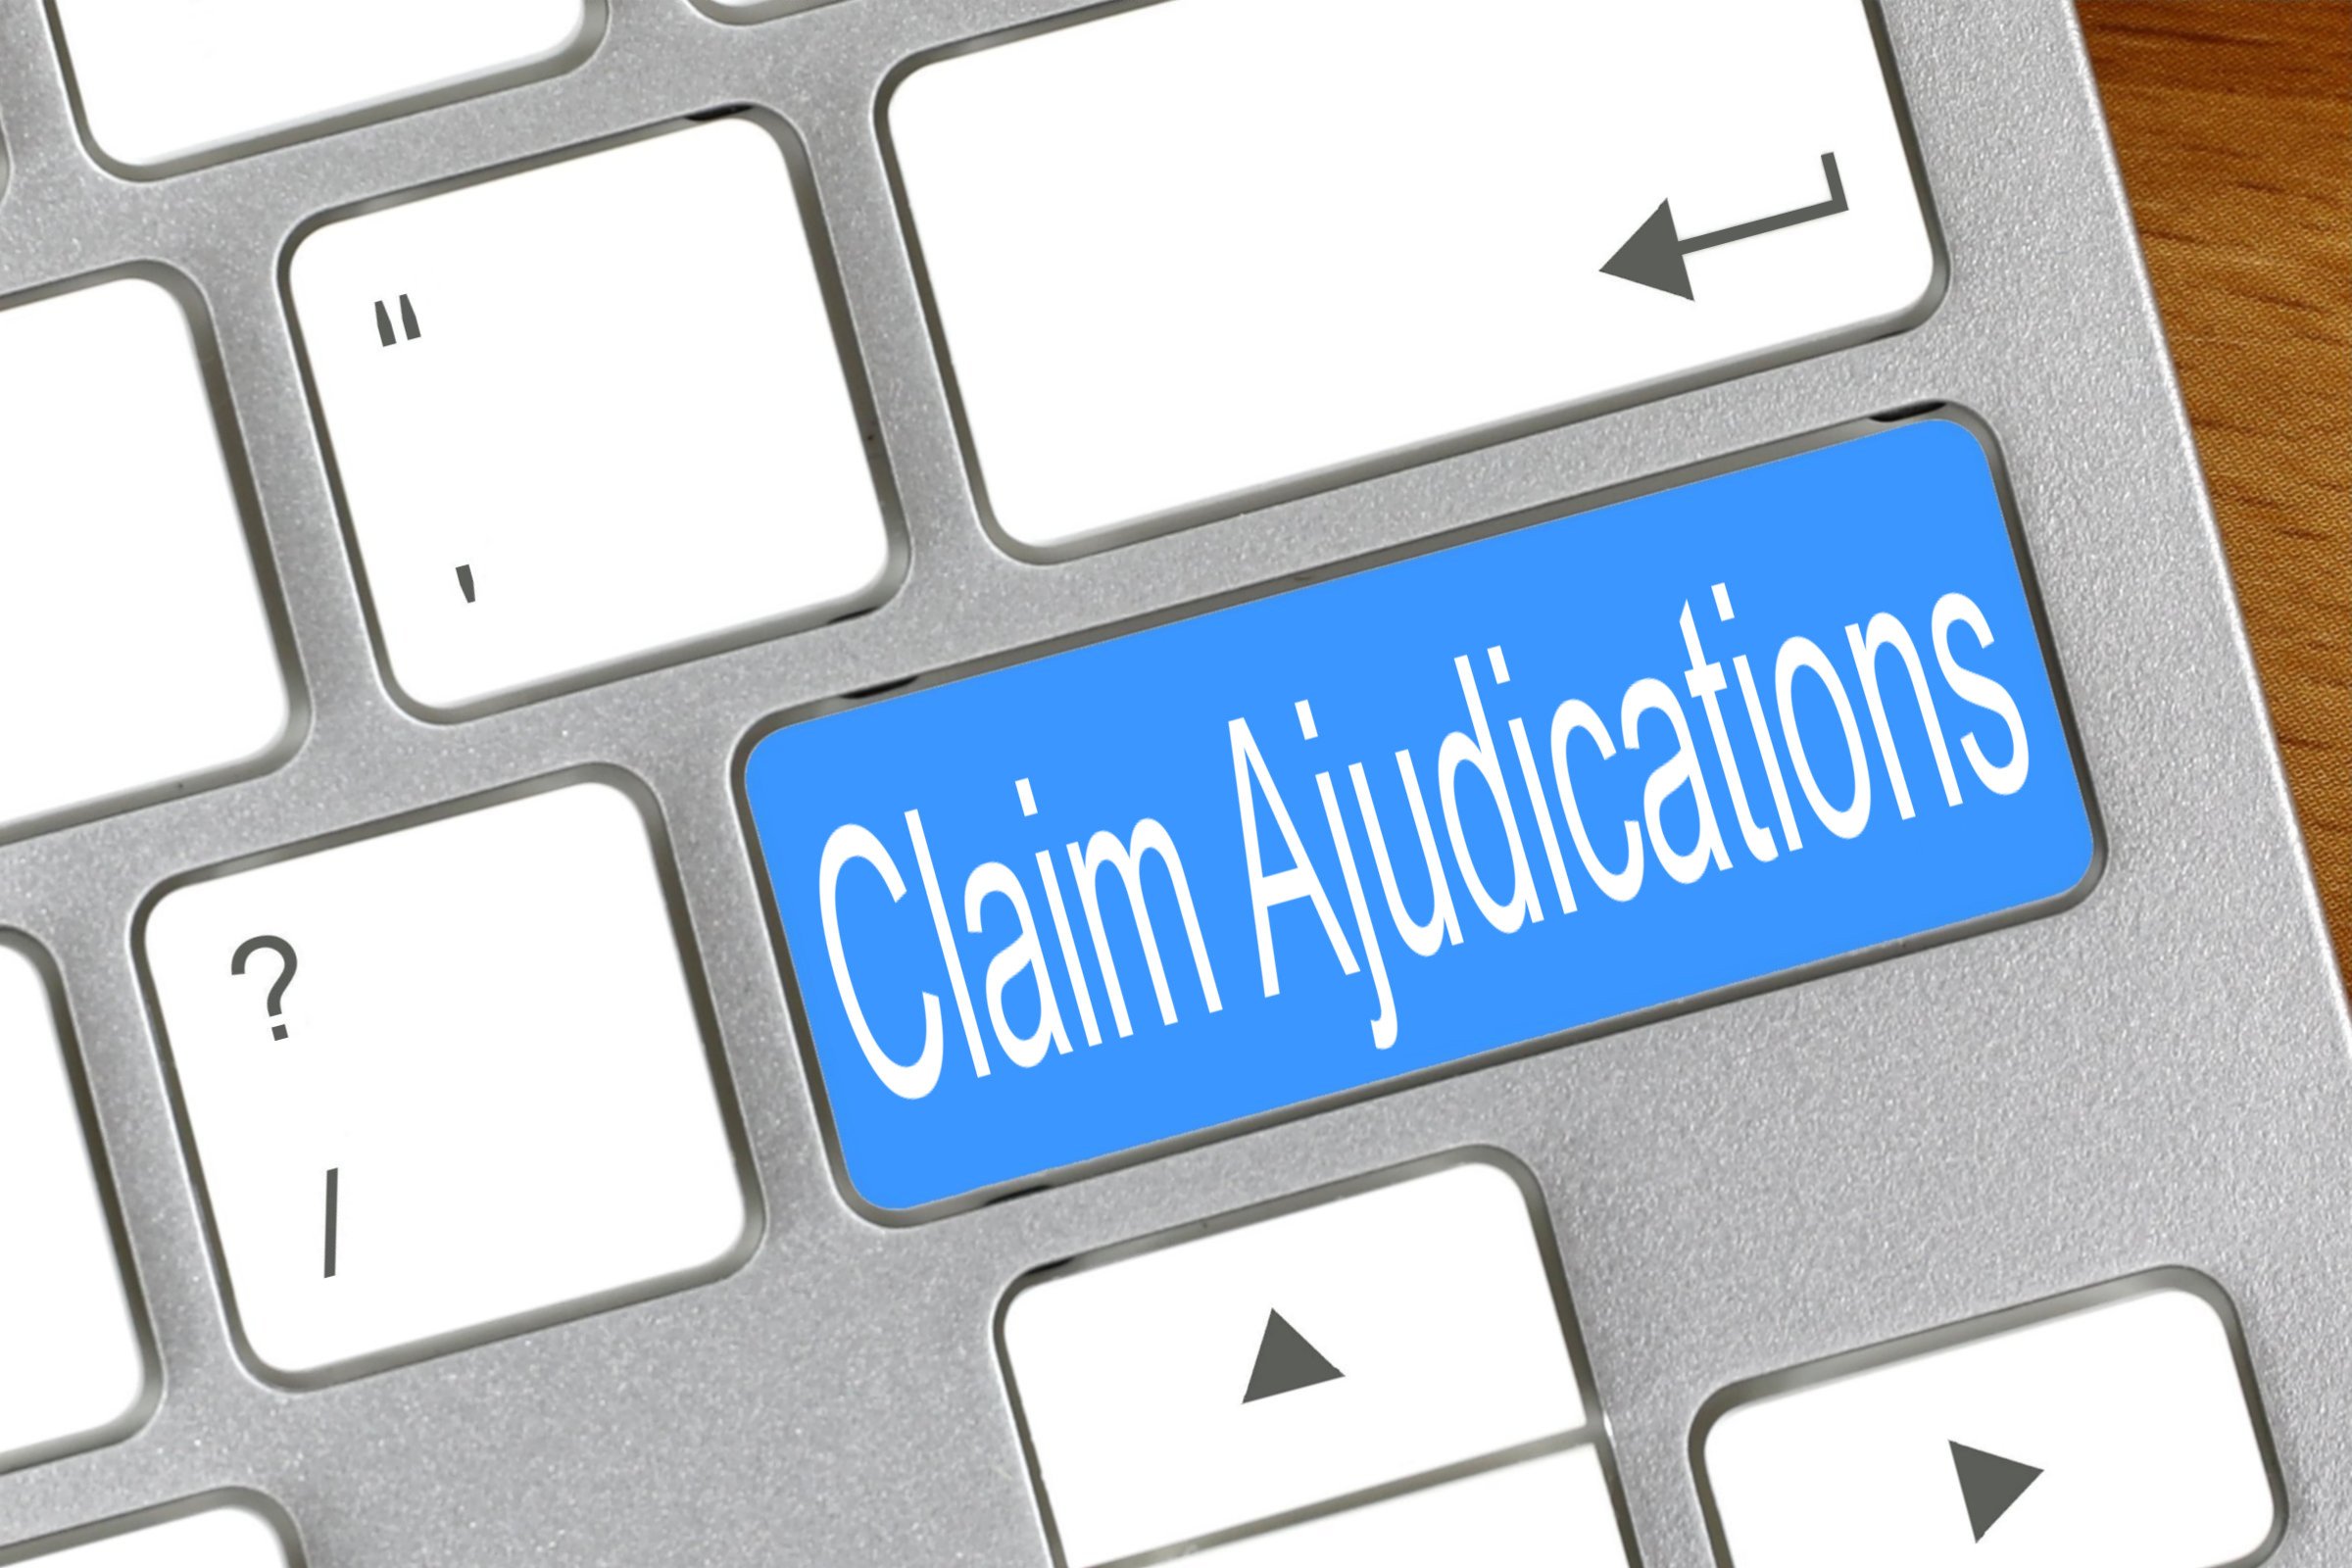 claim ajudications